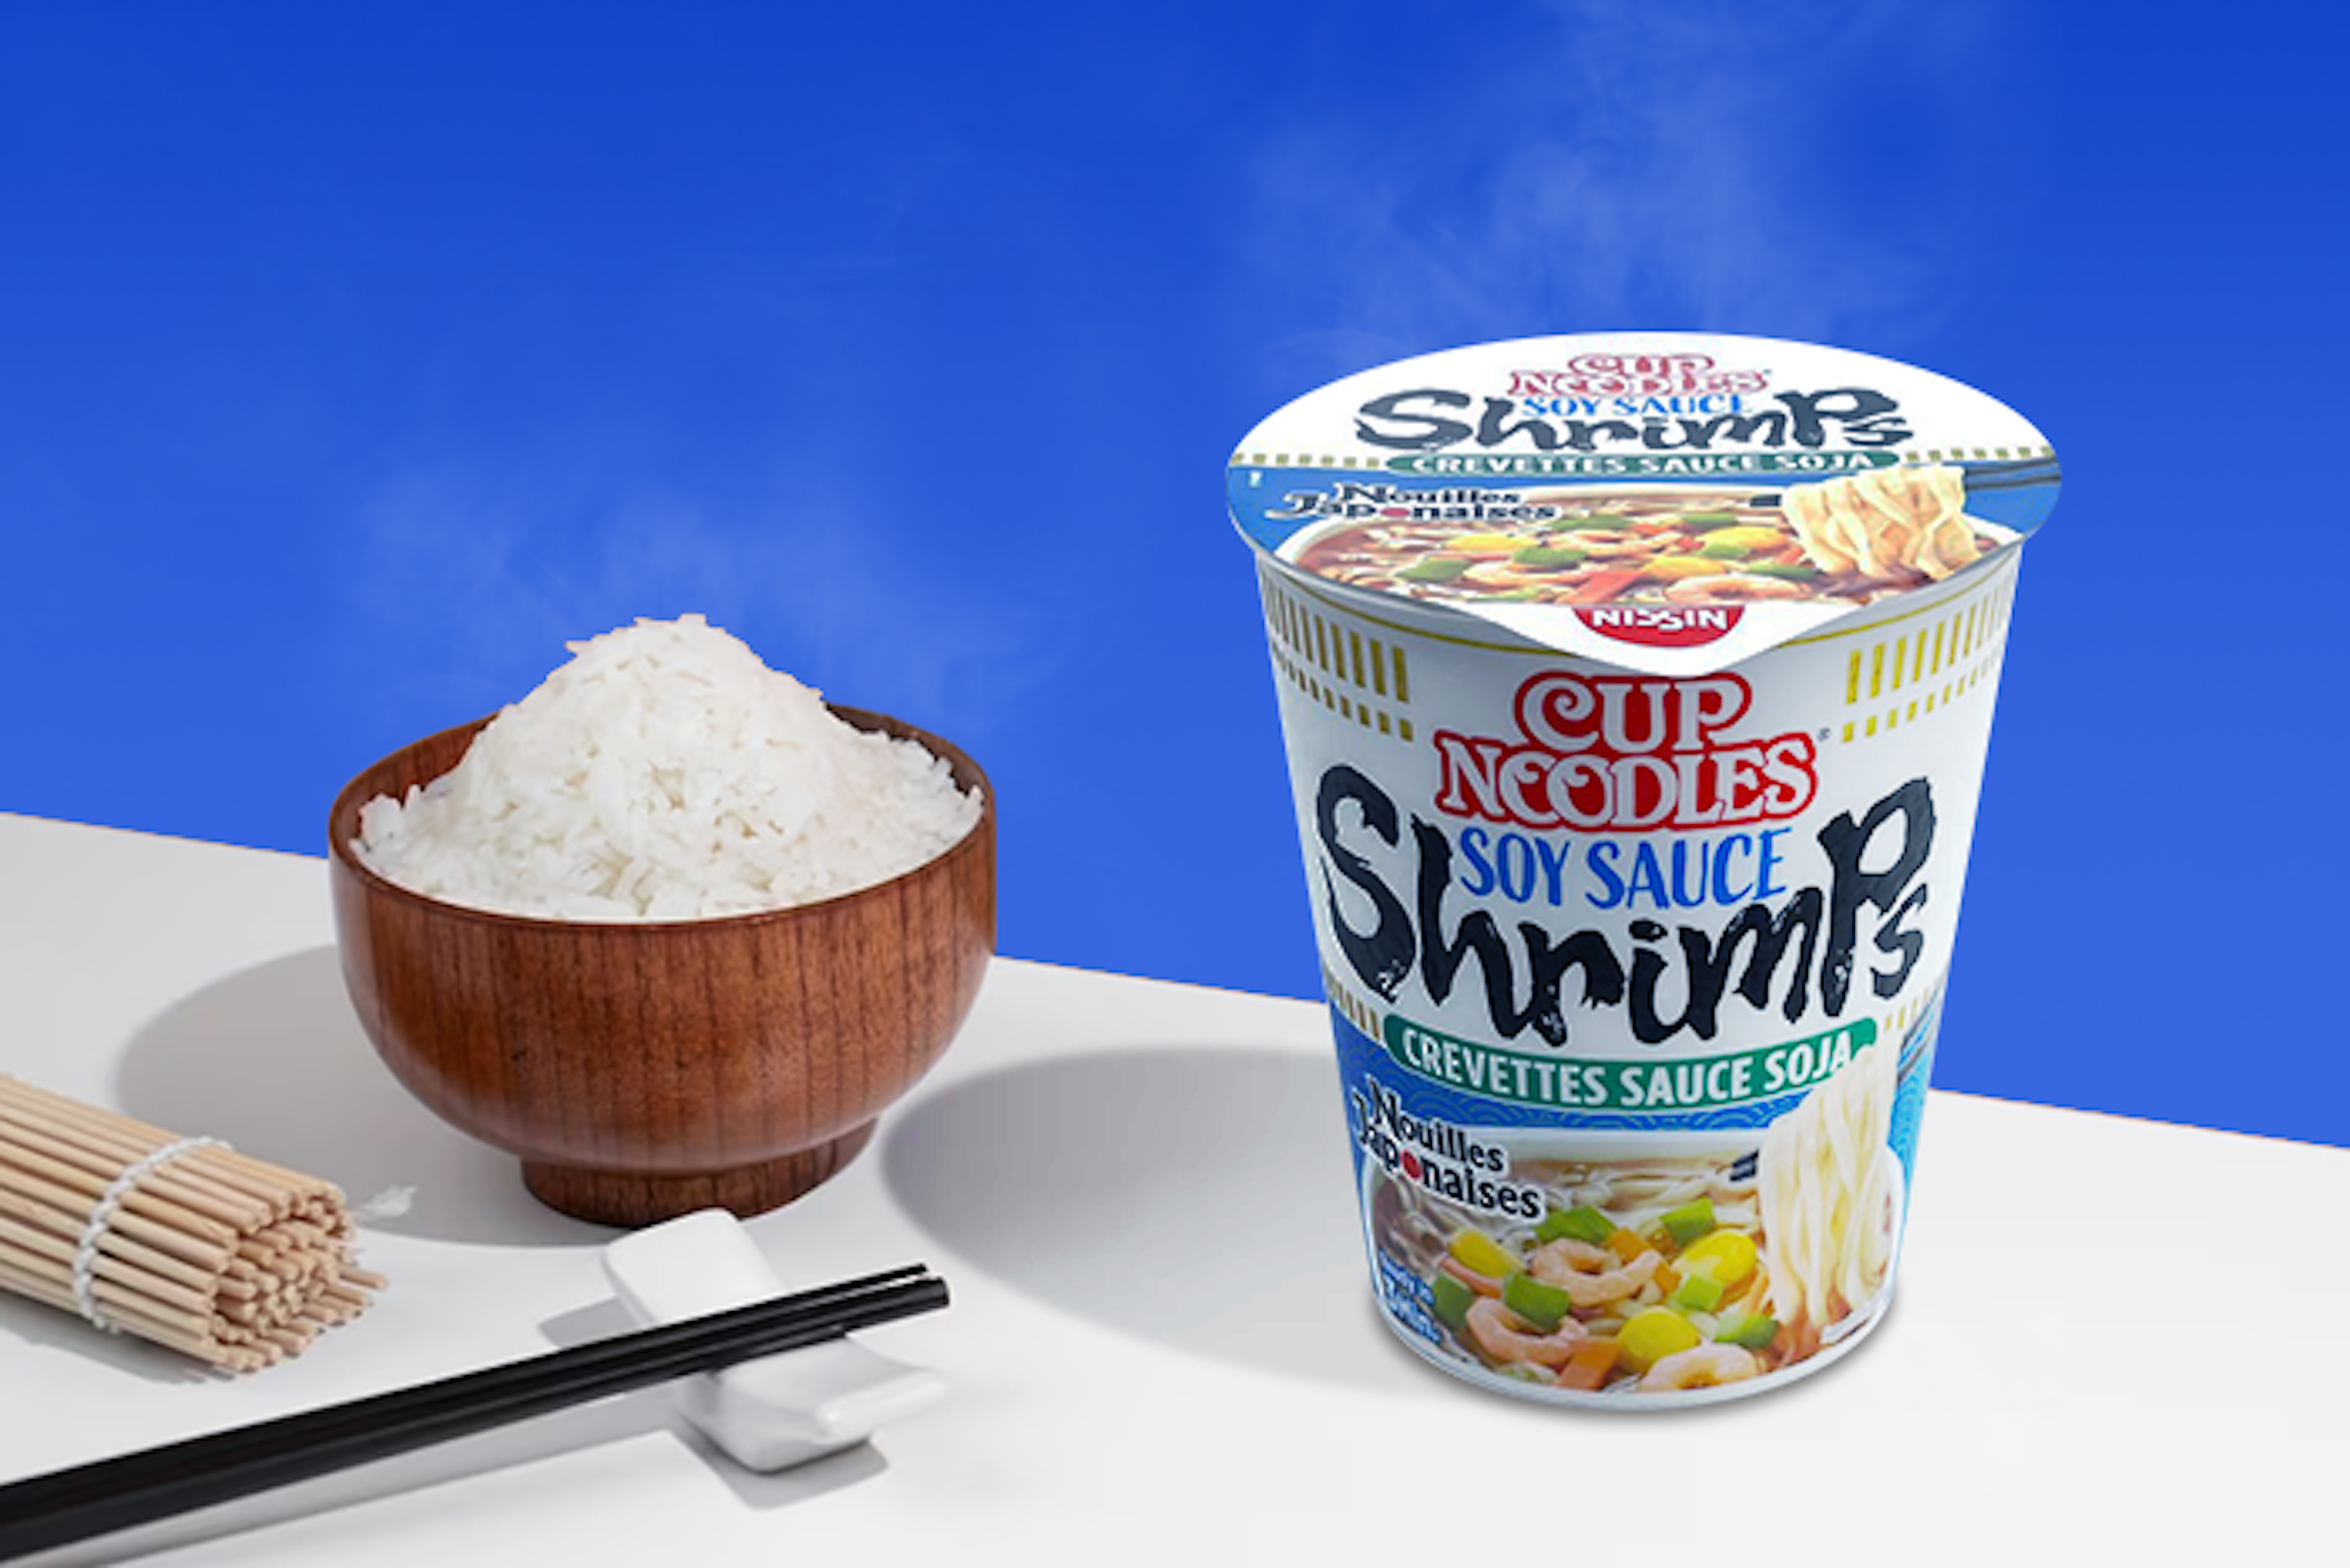 Nissin Cup Noodles Sojasauce Shrimps 63g - Perfekt für unterwegs: "To-go-Essen"